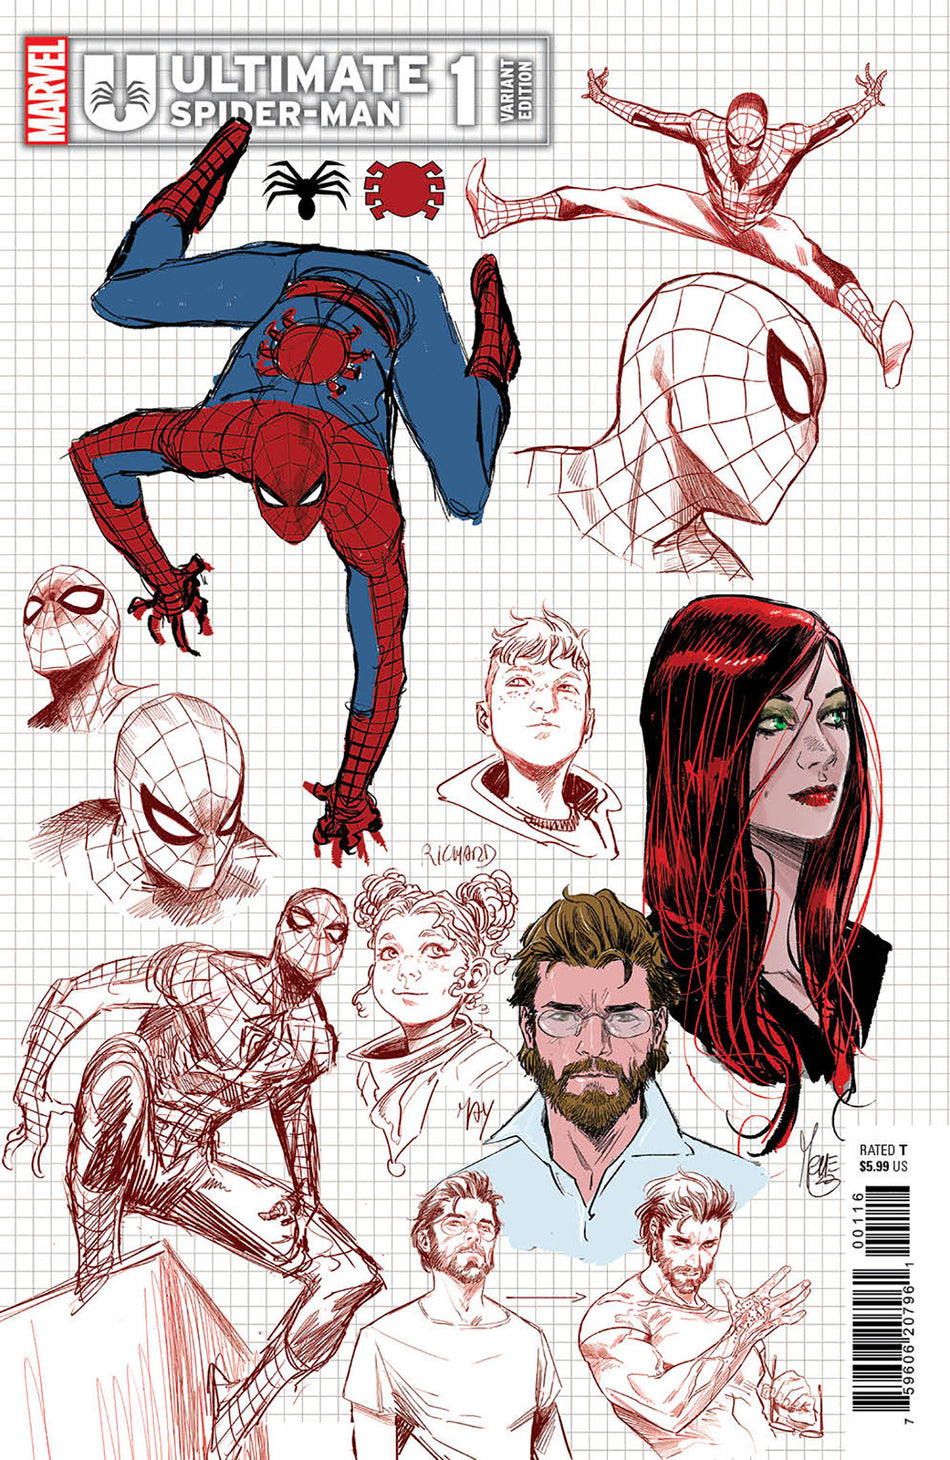 Ultimate Spider-Man #1 Marco Checchetto 1:10 Design Variant